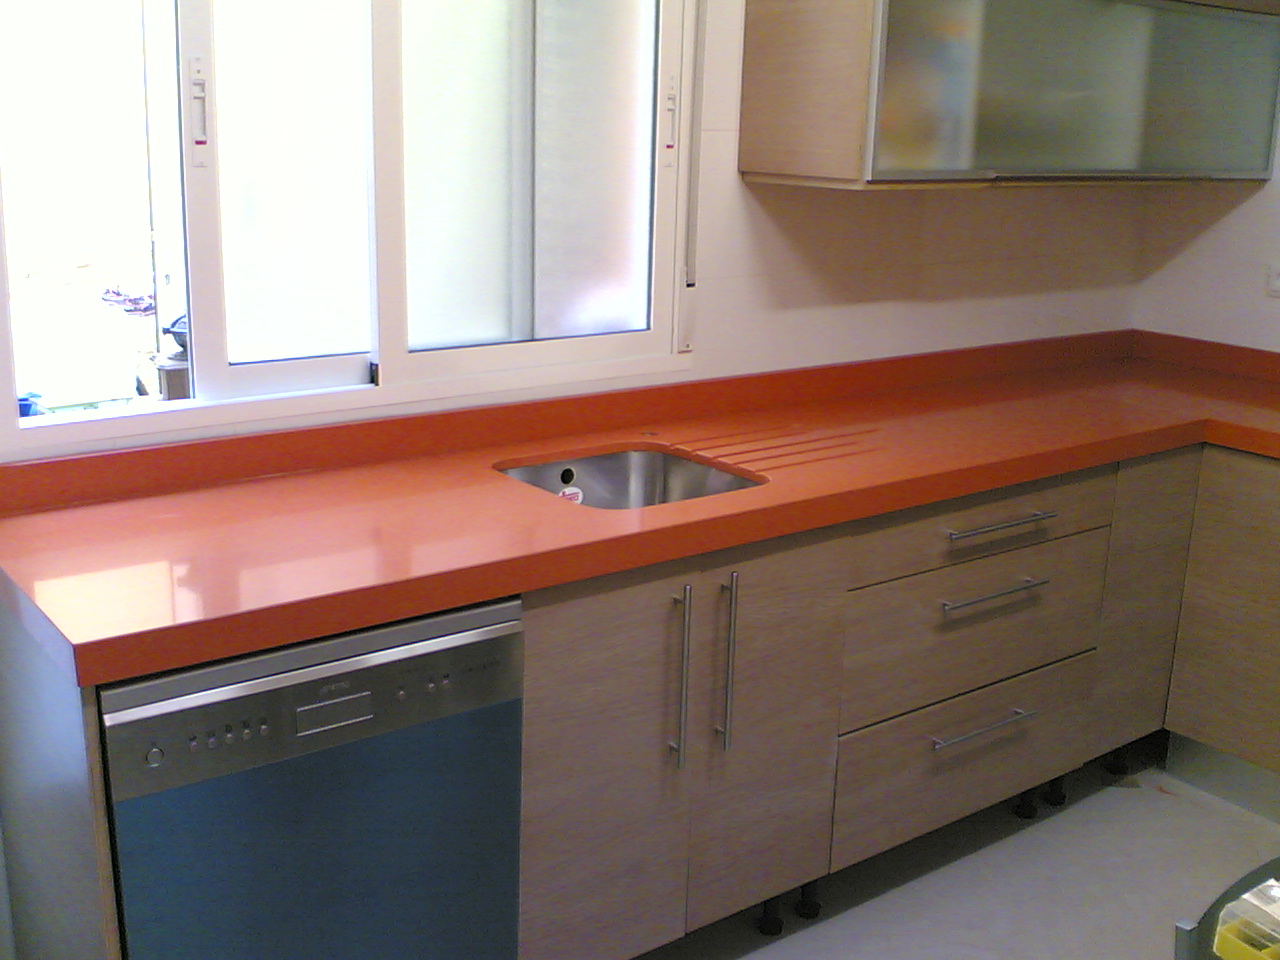 Кухня столешница 45 см. Оранжевая столешница для кухни. Кухня со столешницей 90 см. Оранжевая столешница камень. Кухонная столешница оранжевого цвета.